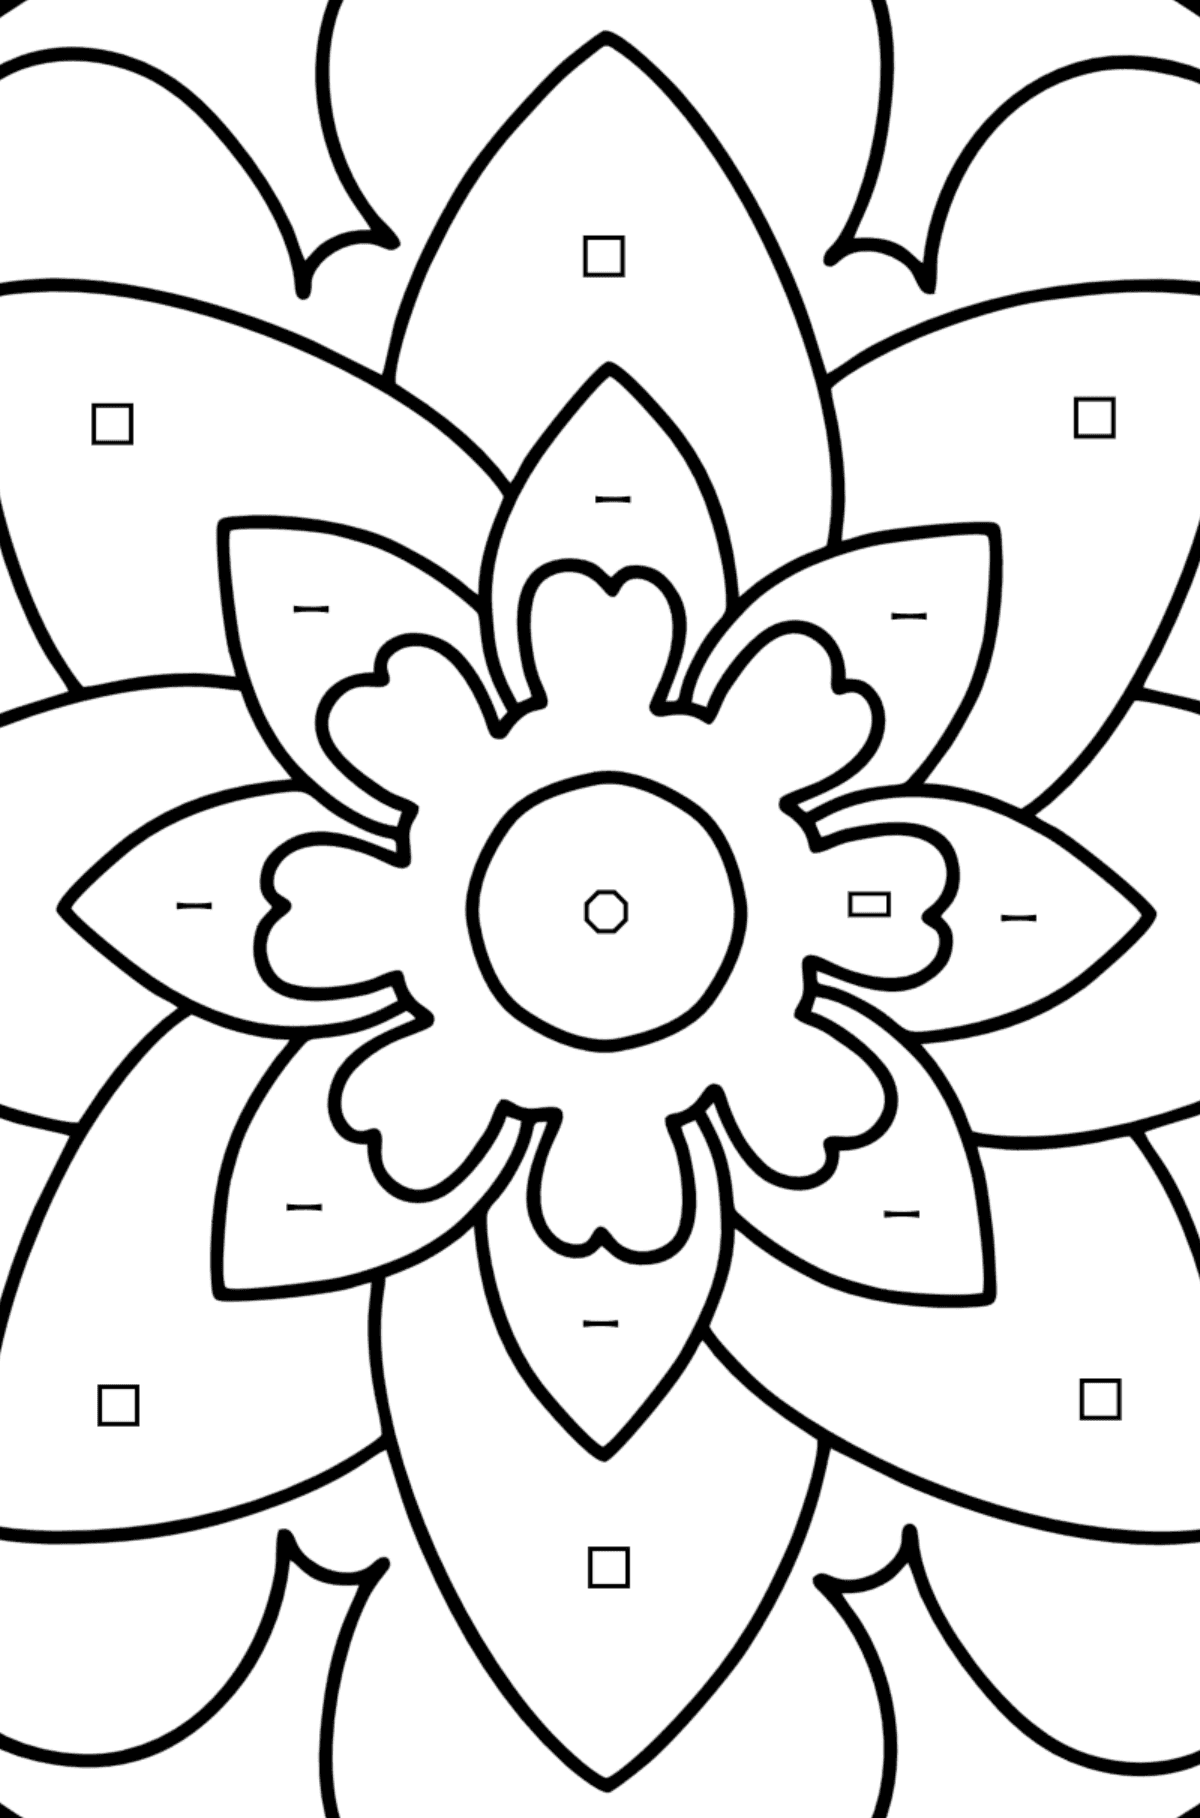 Kolorowanka Mandala - 20 elementów - Kolorowanie według symboli i figur geometrycznych dla dzieci